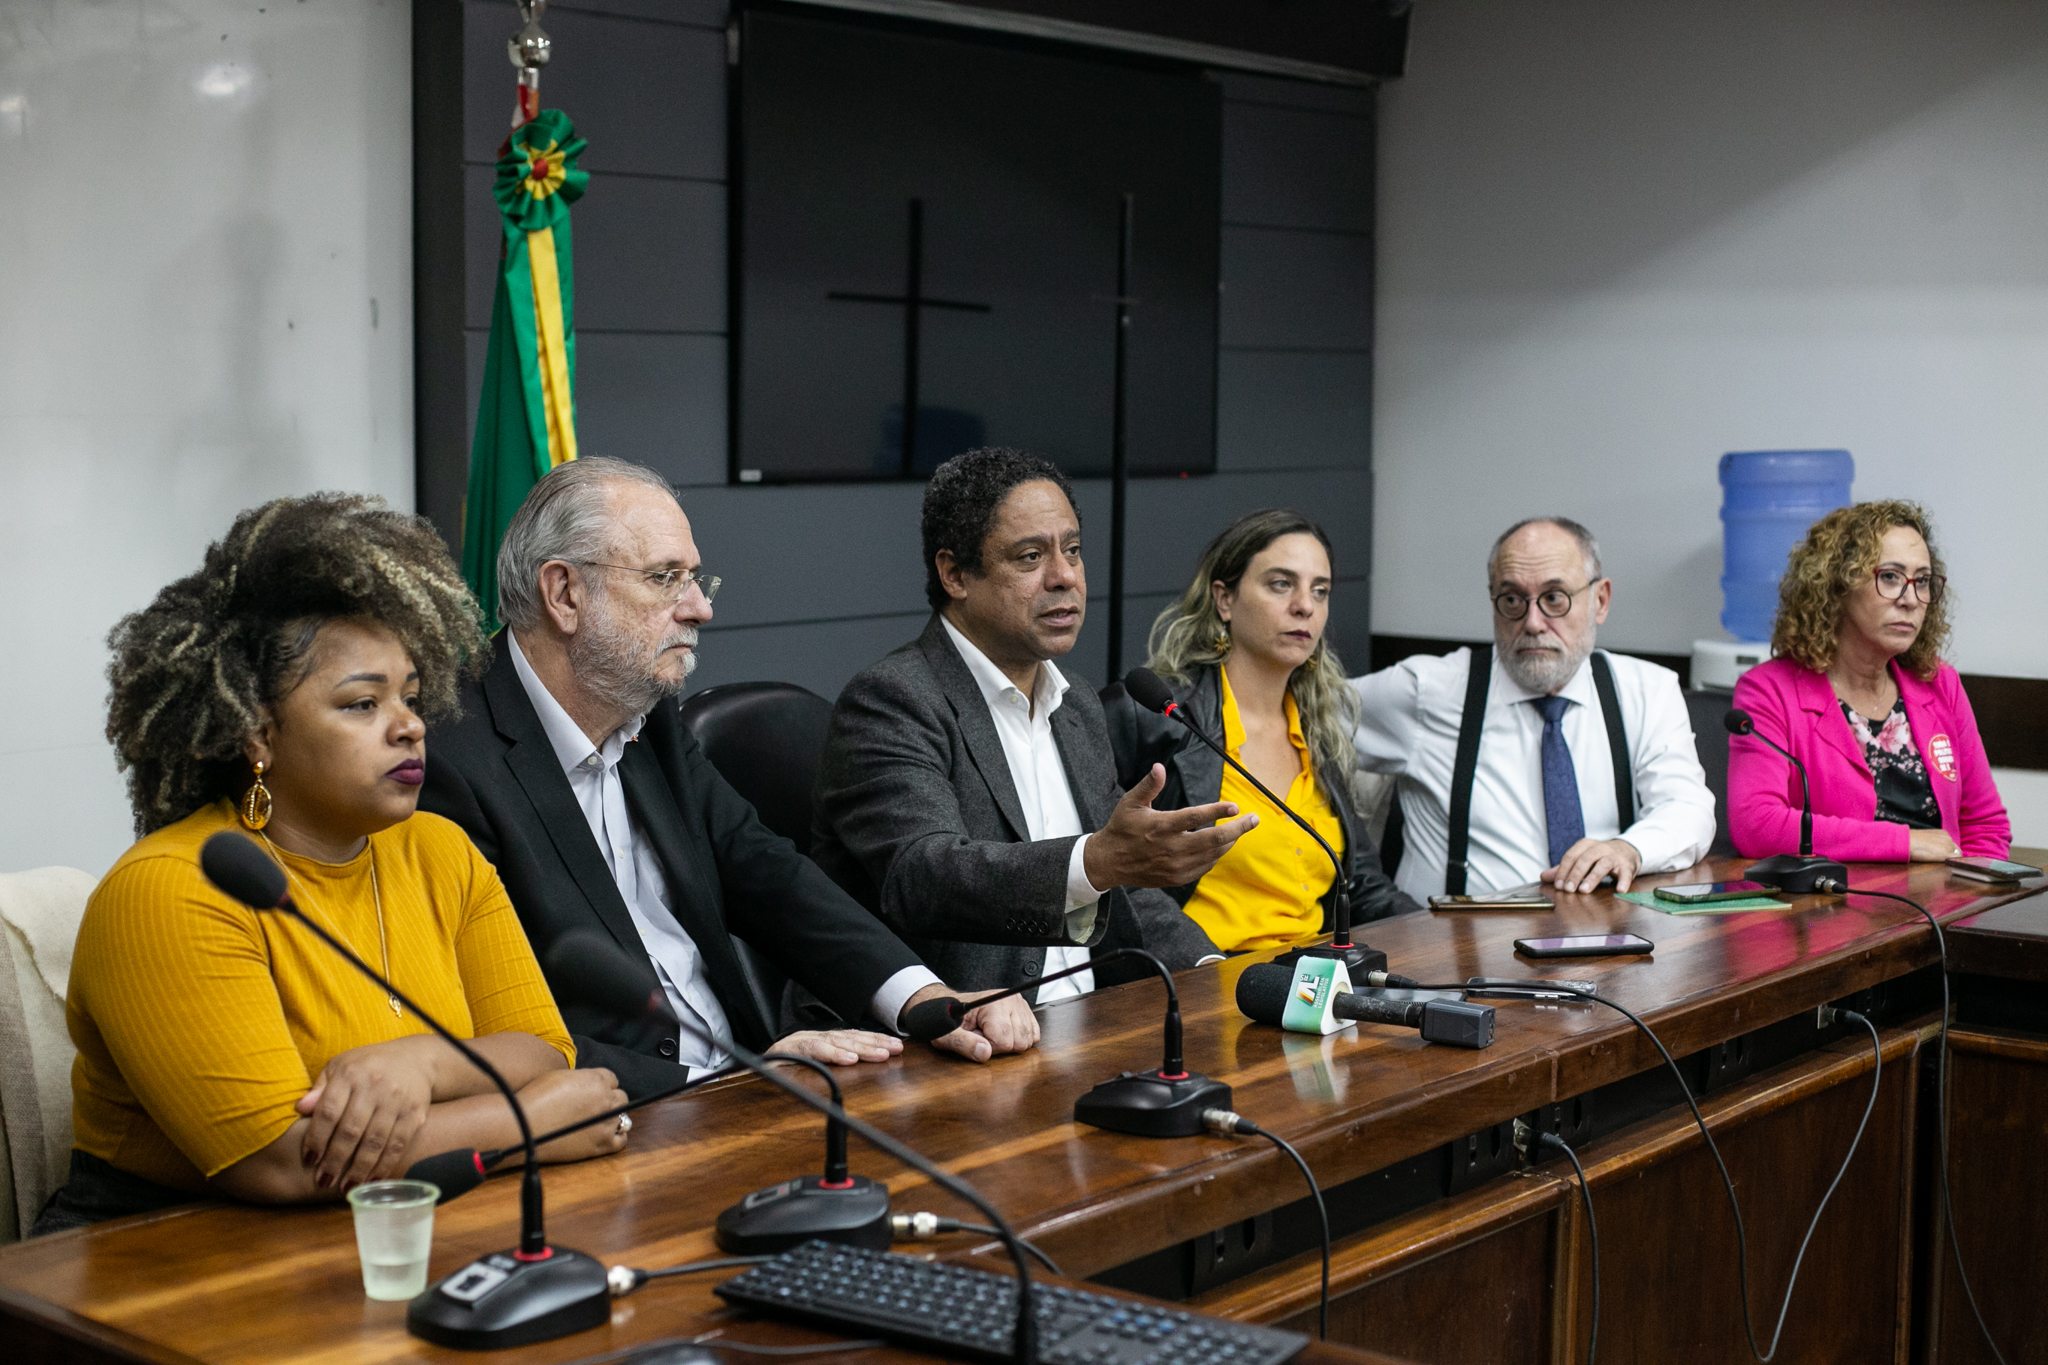 IGP suspende encaminhamento de carteiras de identidade até 1º de março em  Porto Alegre